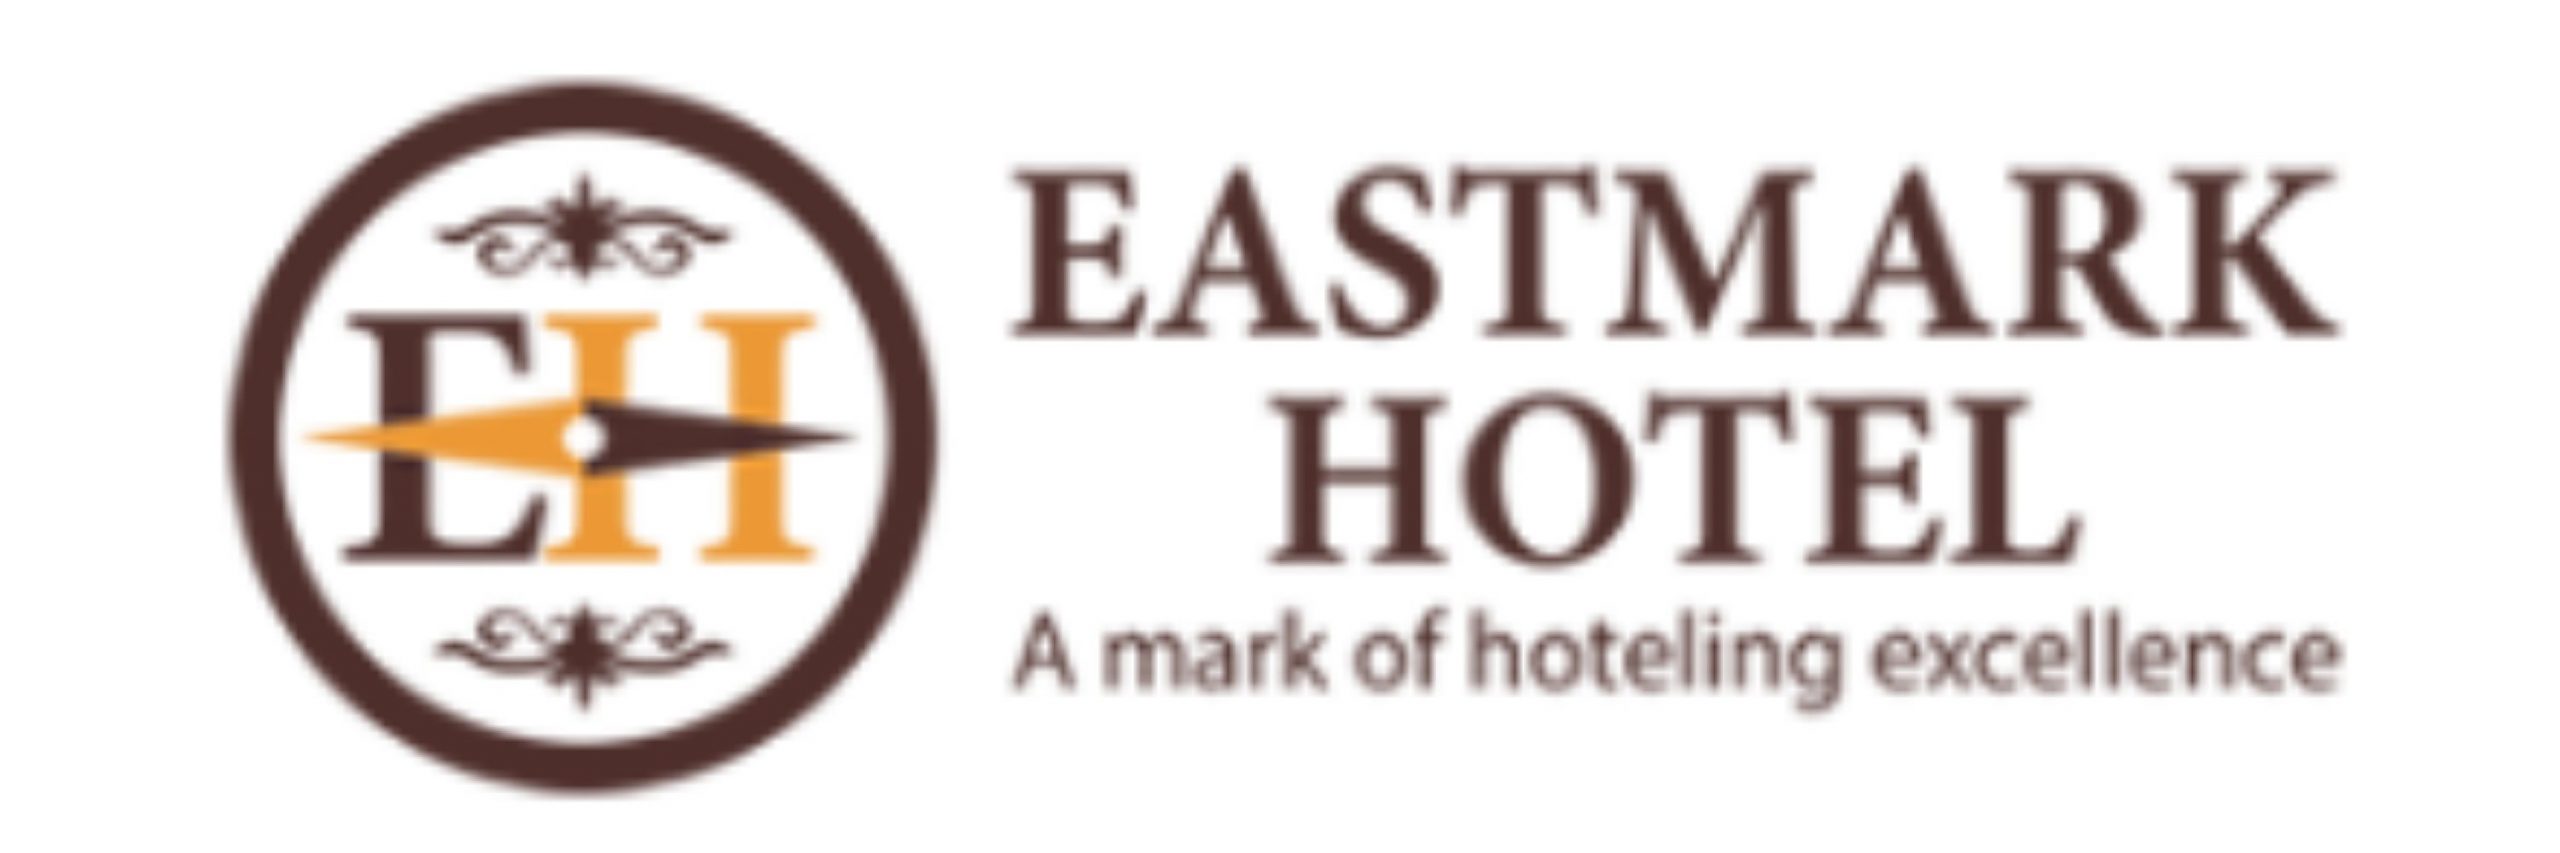 Eastmark Hotel |   Offers